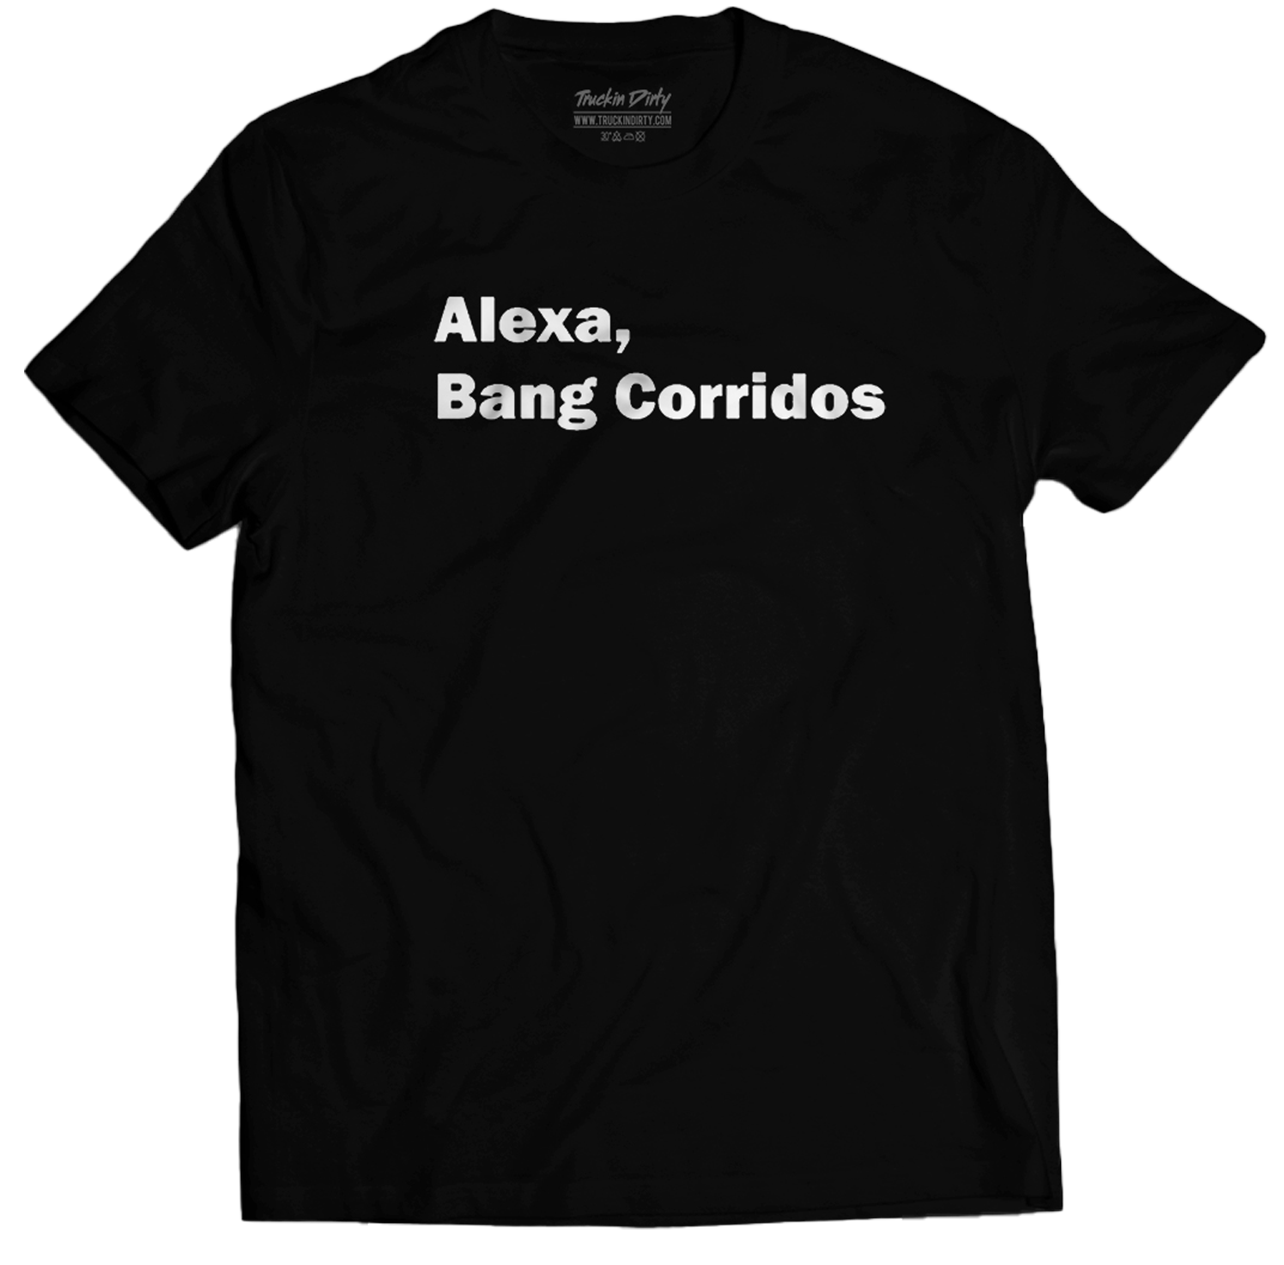 Alexa Bang Corridos Shirt